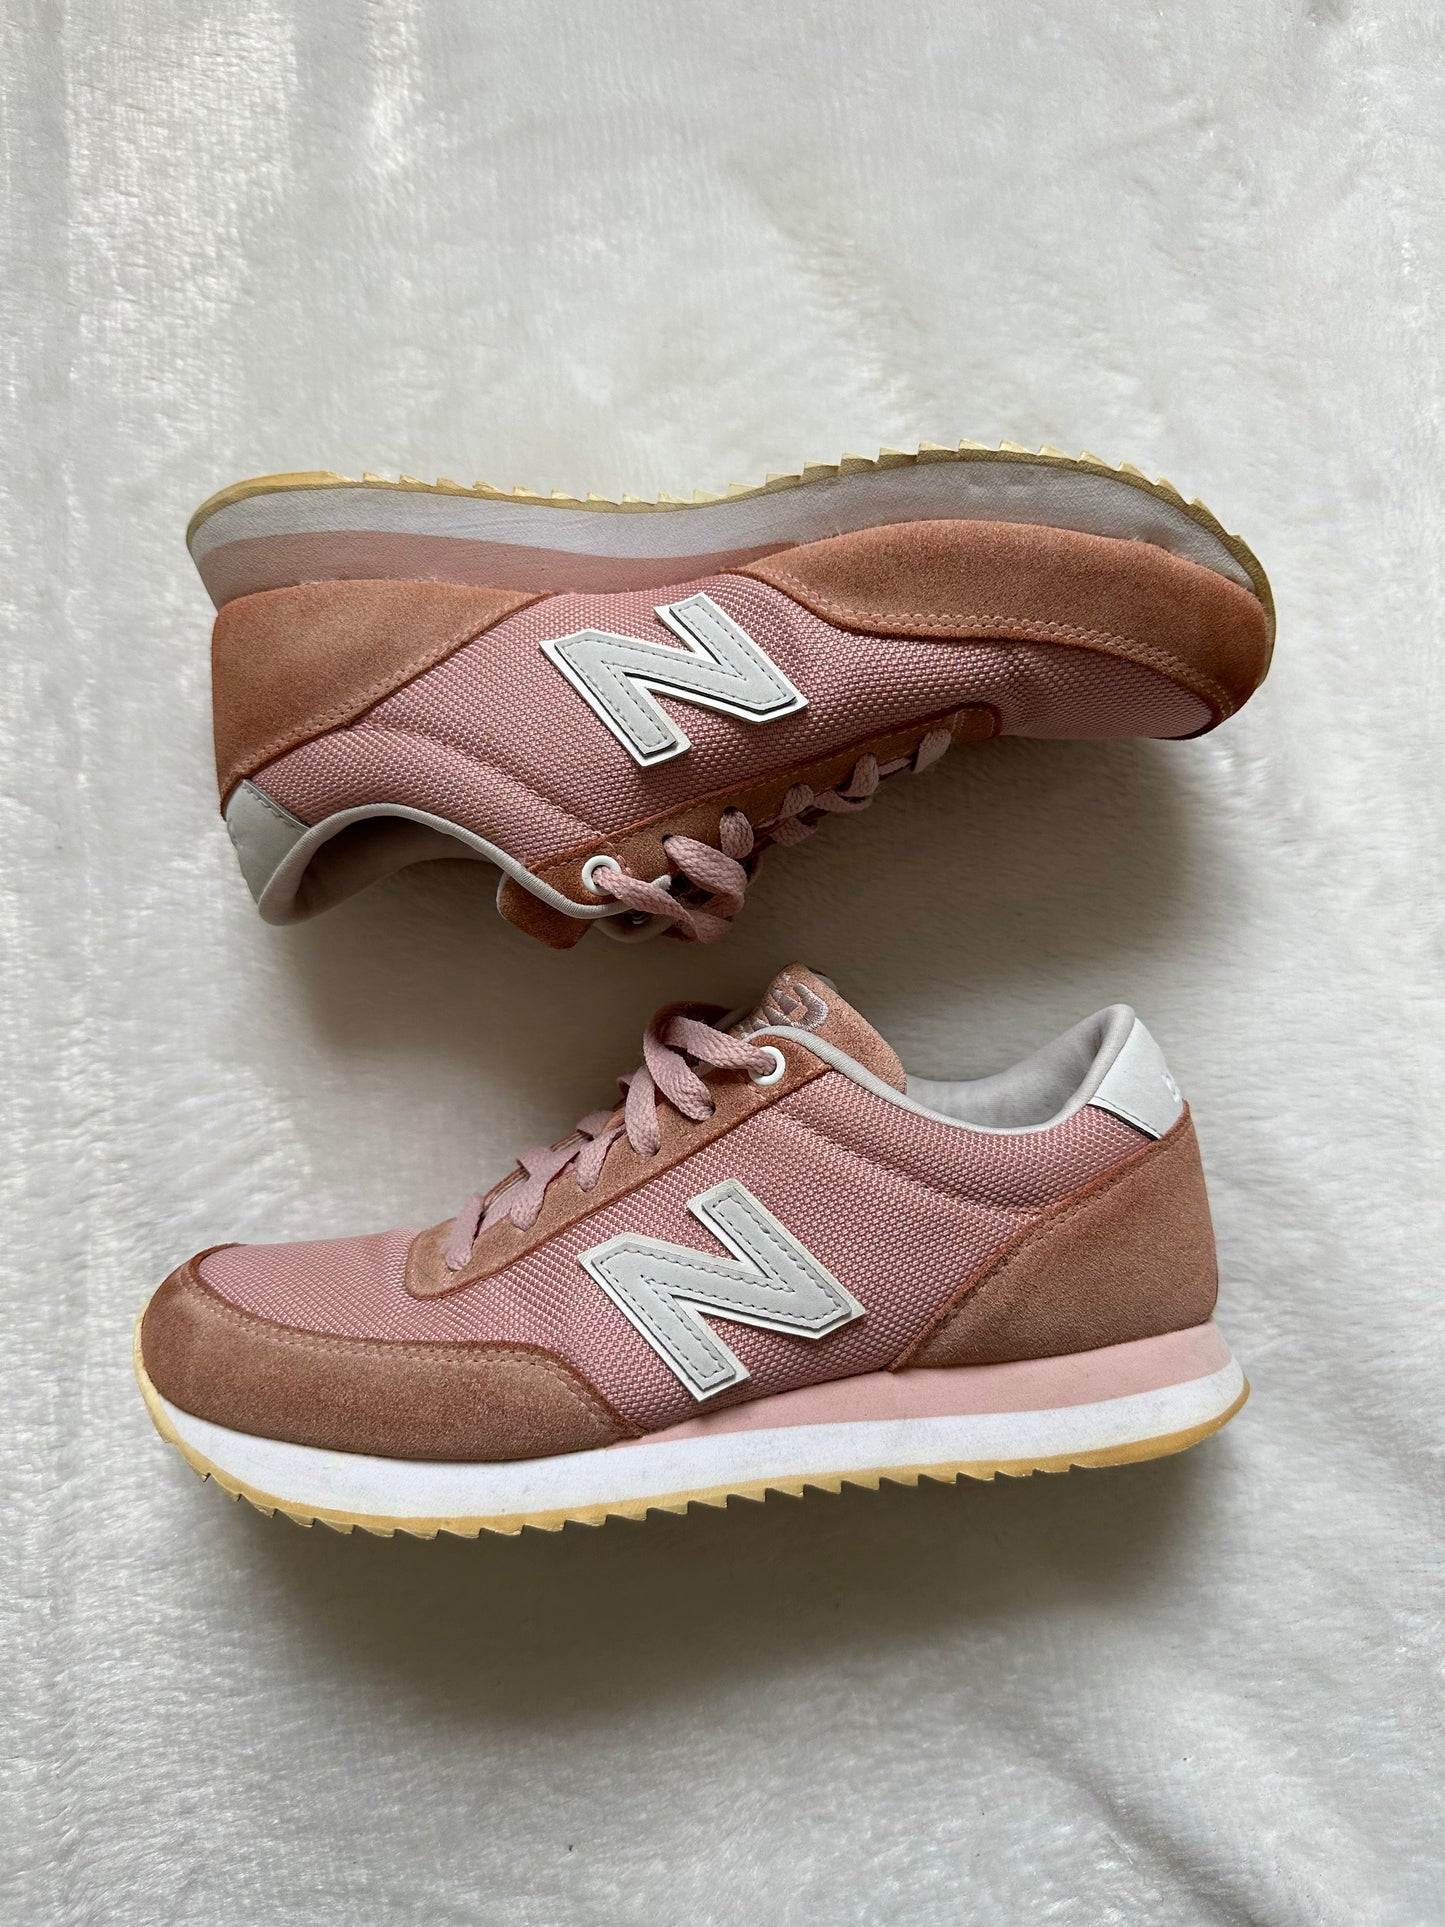 New Balance Pink Sneakers - Better World Thrift